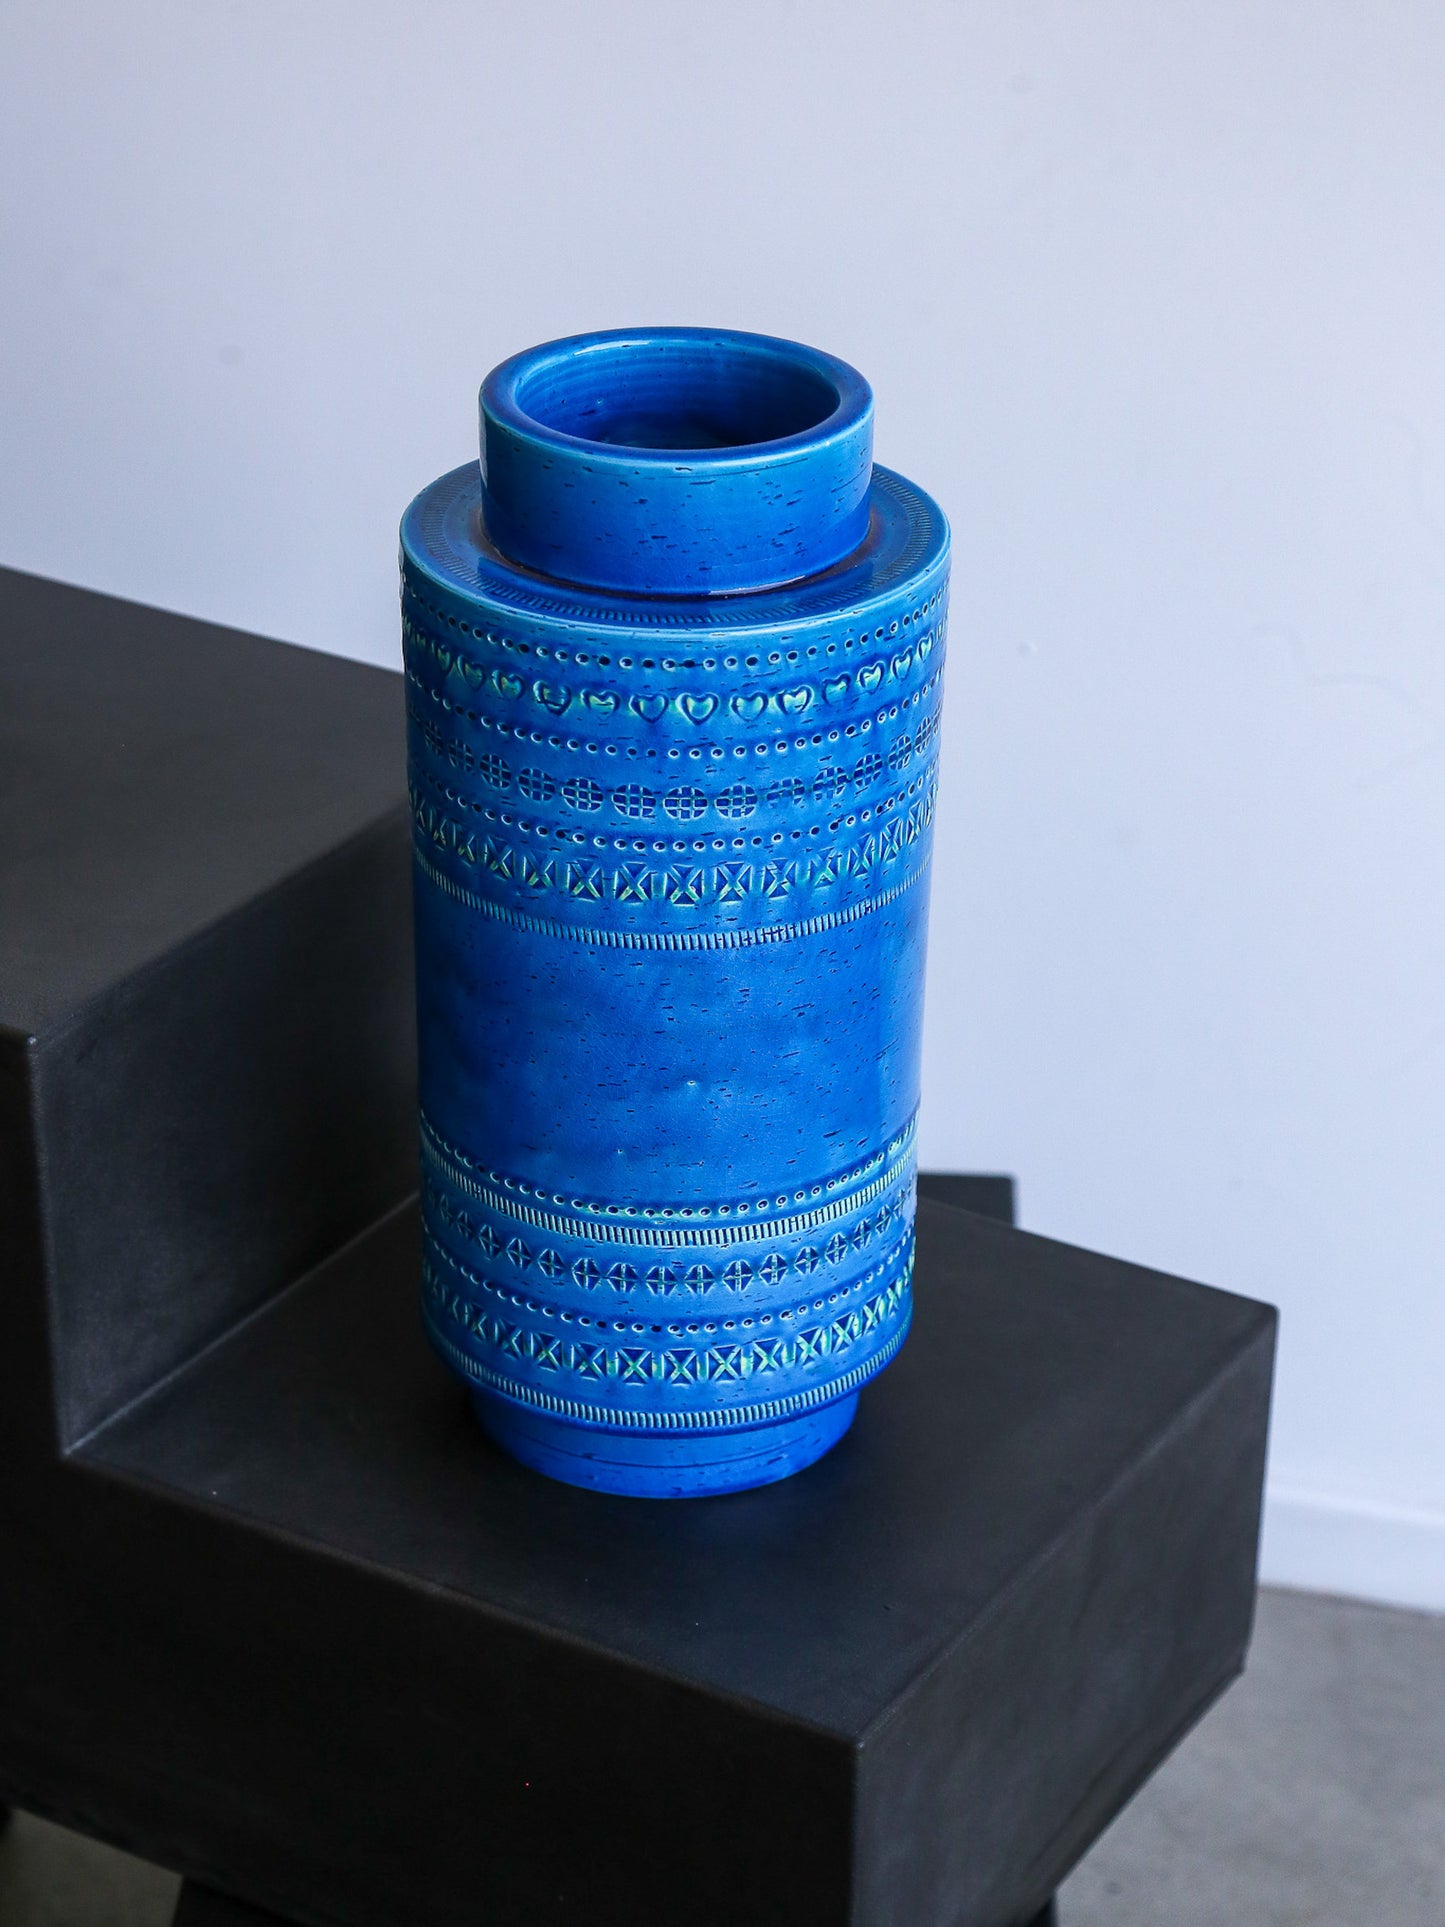 Bitossi Rimini Blue Large Vase